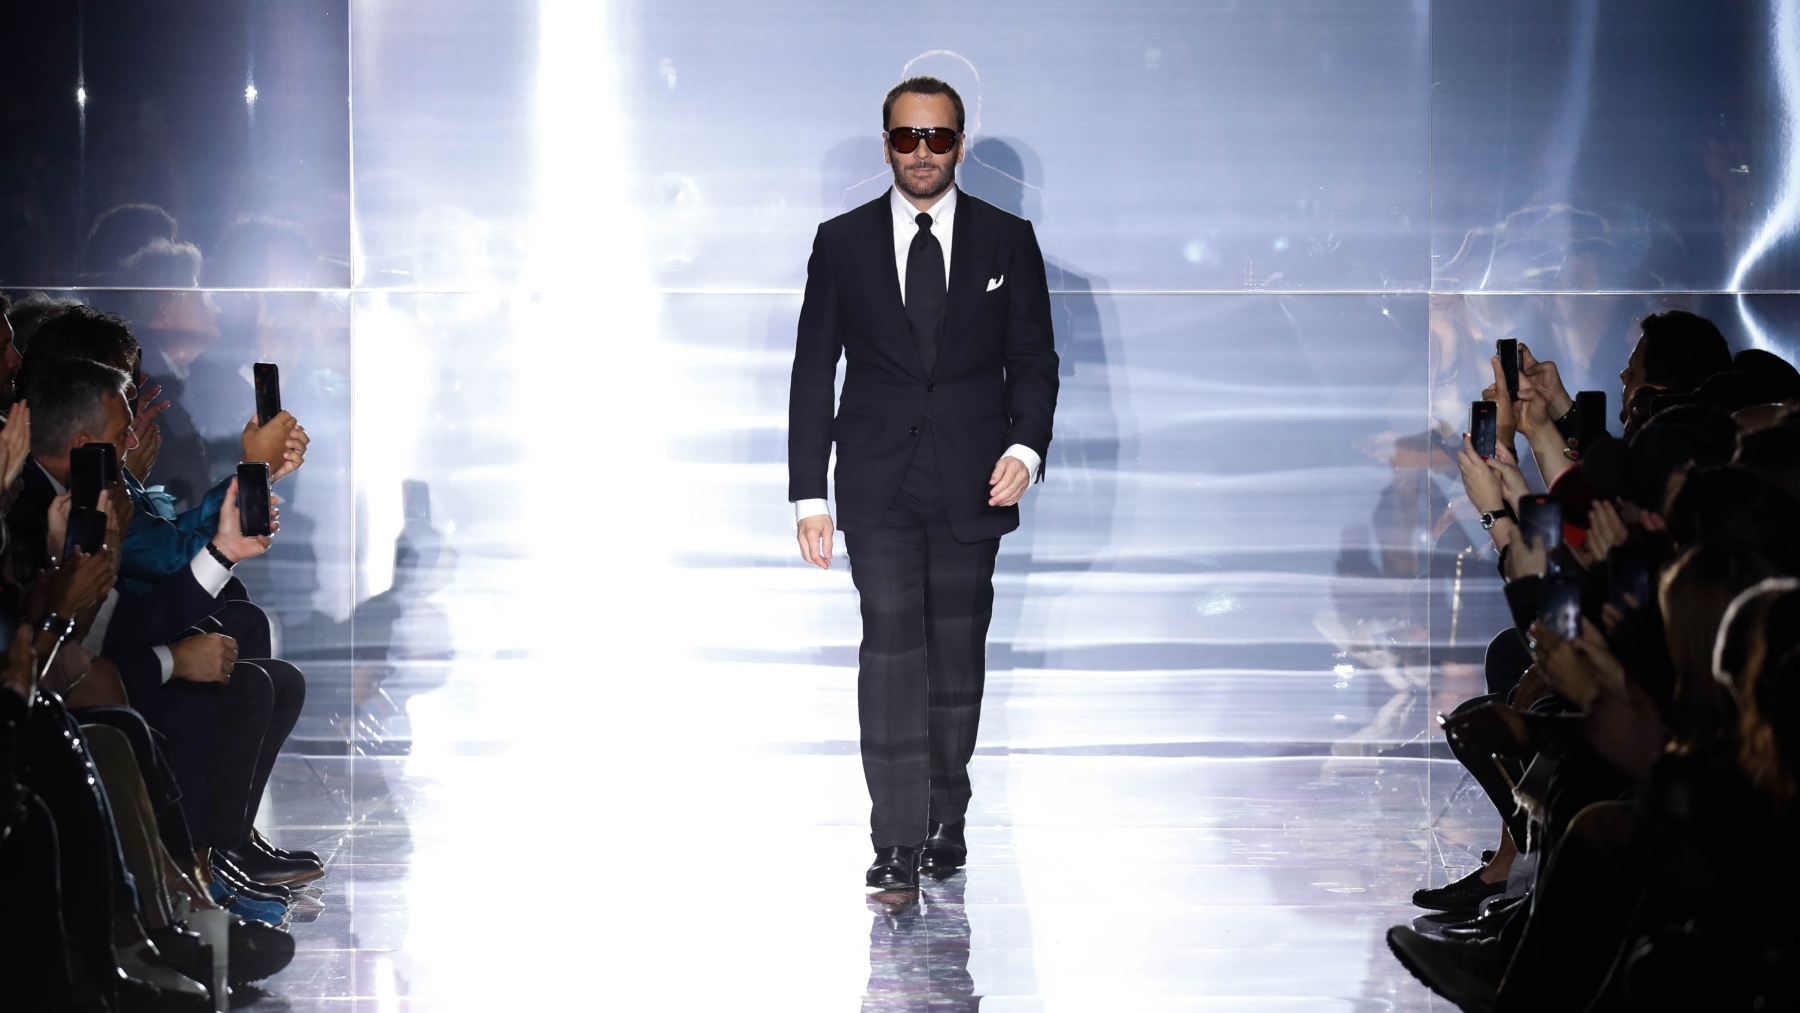 Tom Ford brings New York Fashion to LA